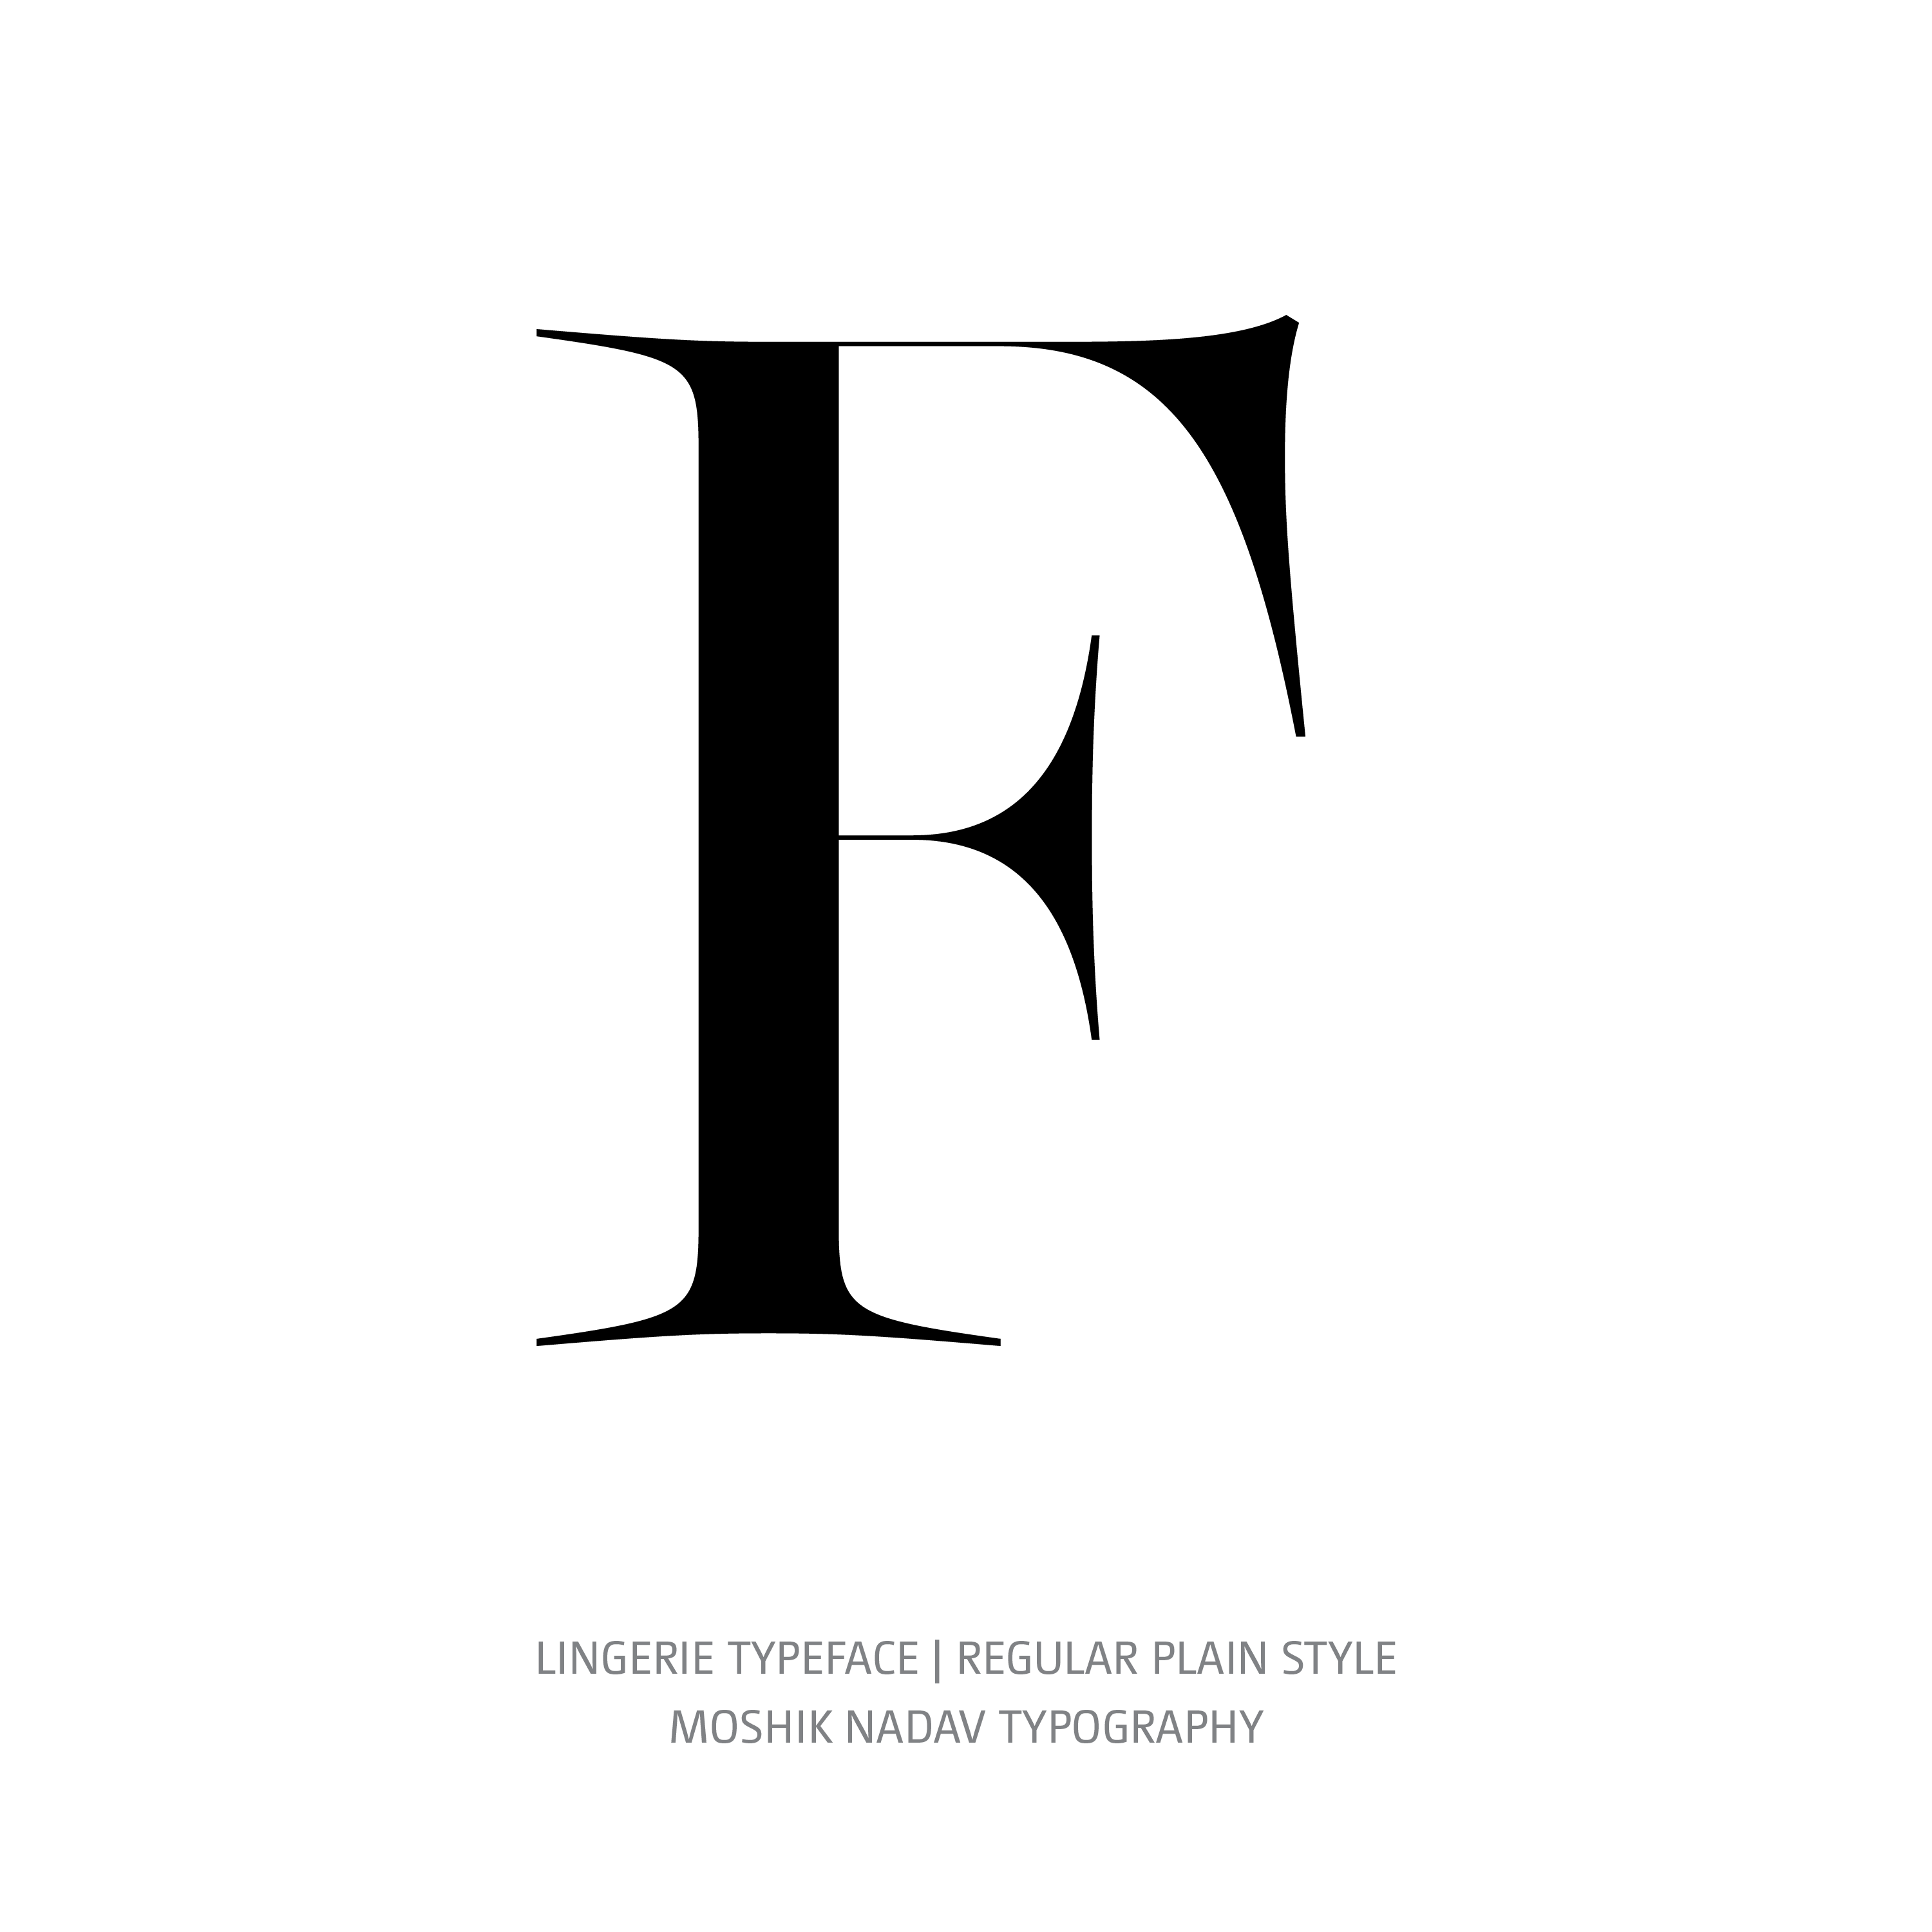 Lingerie Typeface Regular Plain F